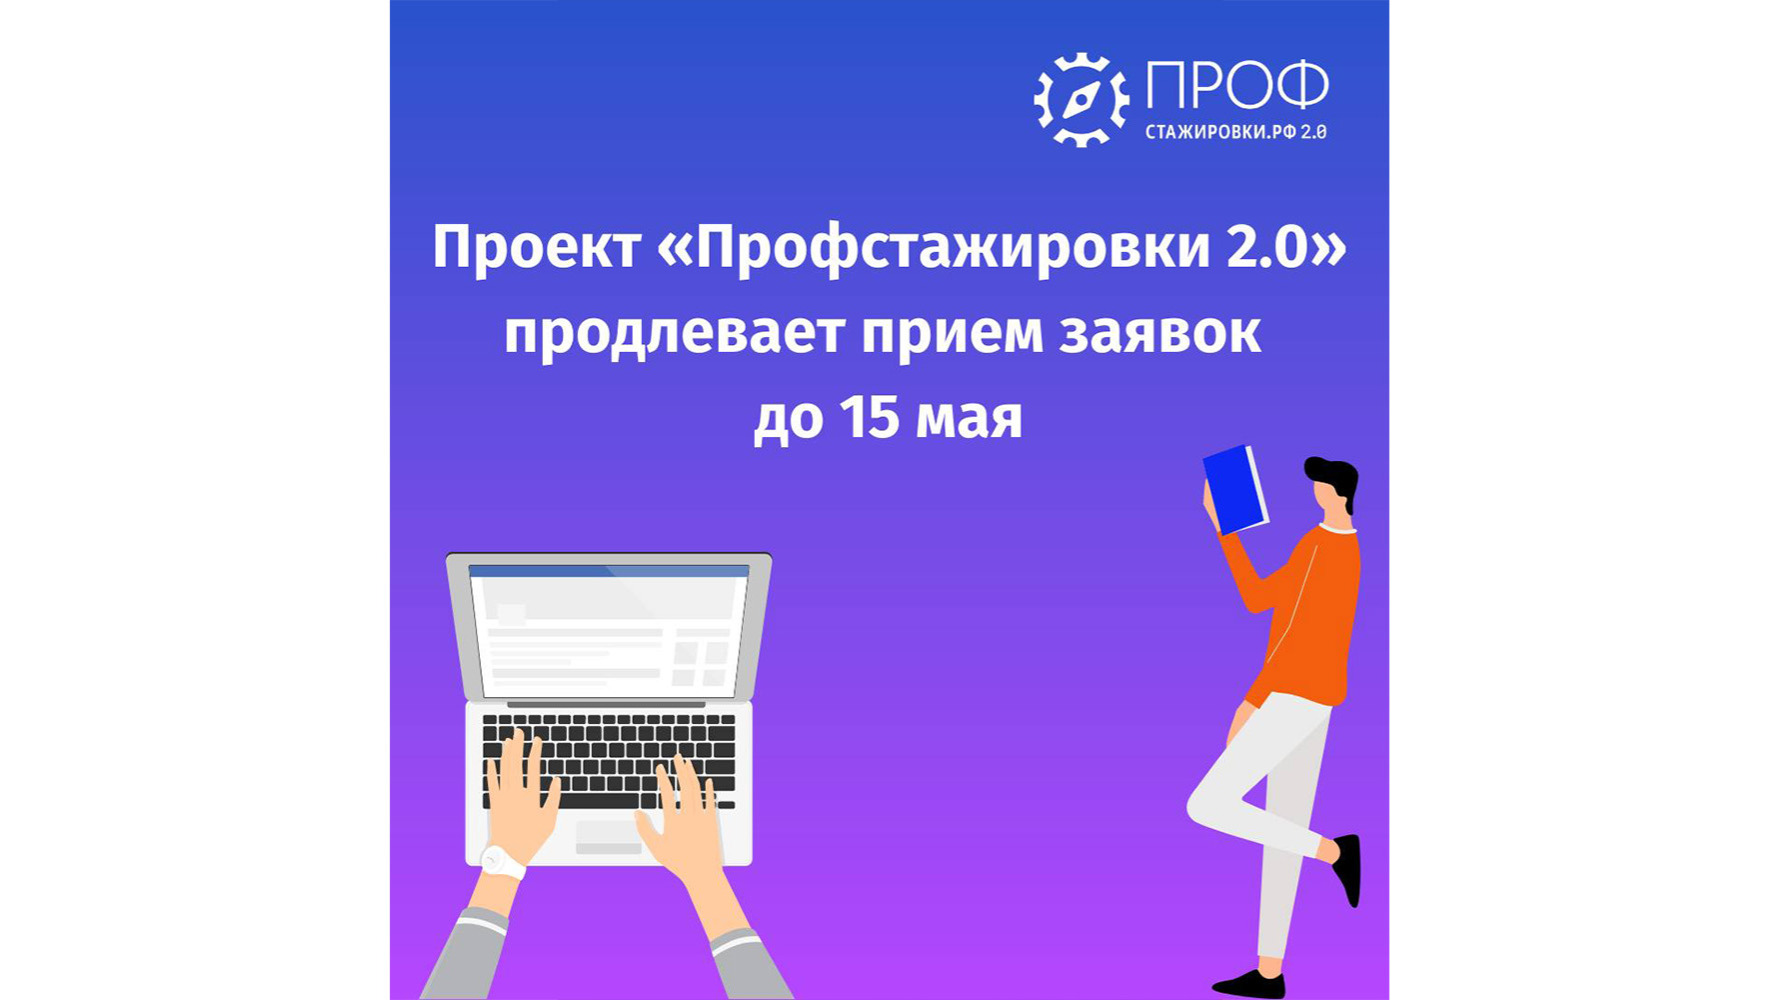 Проект «Профстажировки 2.0» продлил прием заявок на конкурс студенческих работ до 15 мая